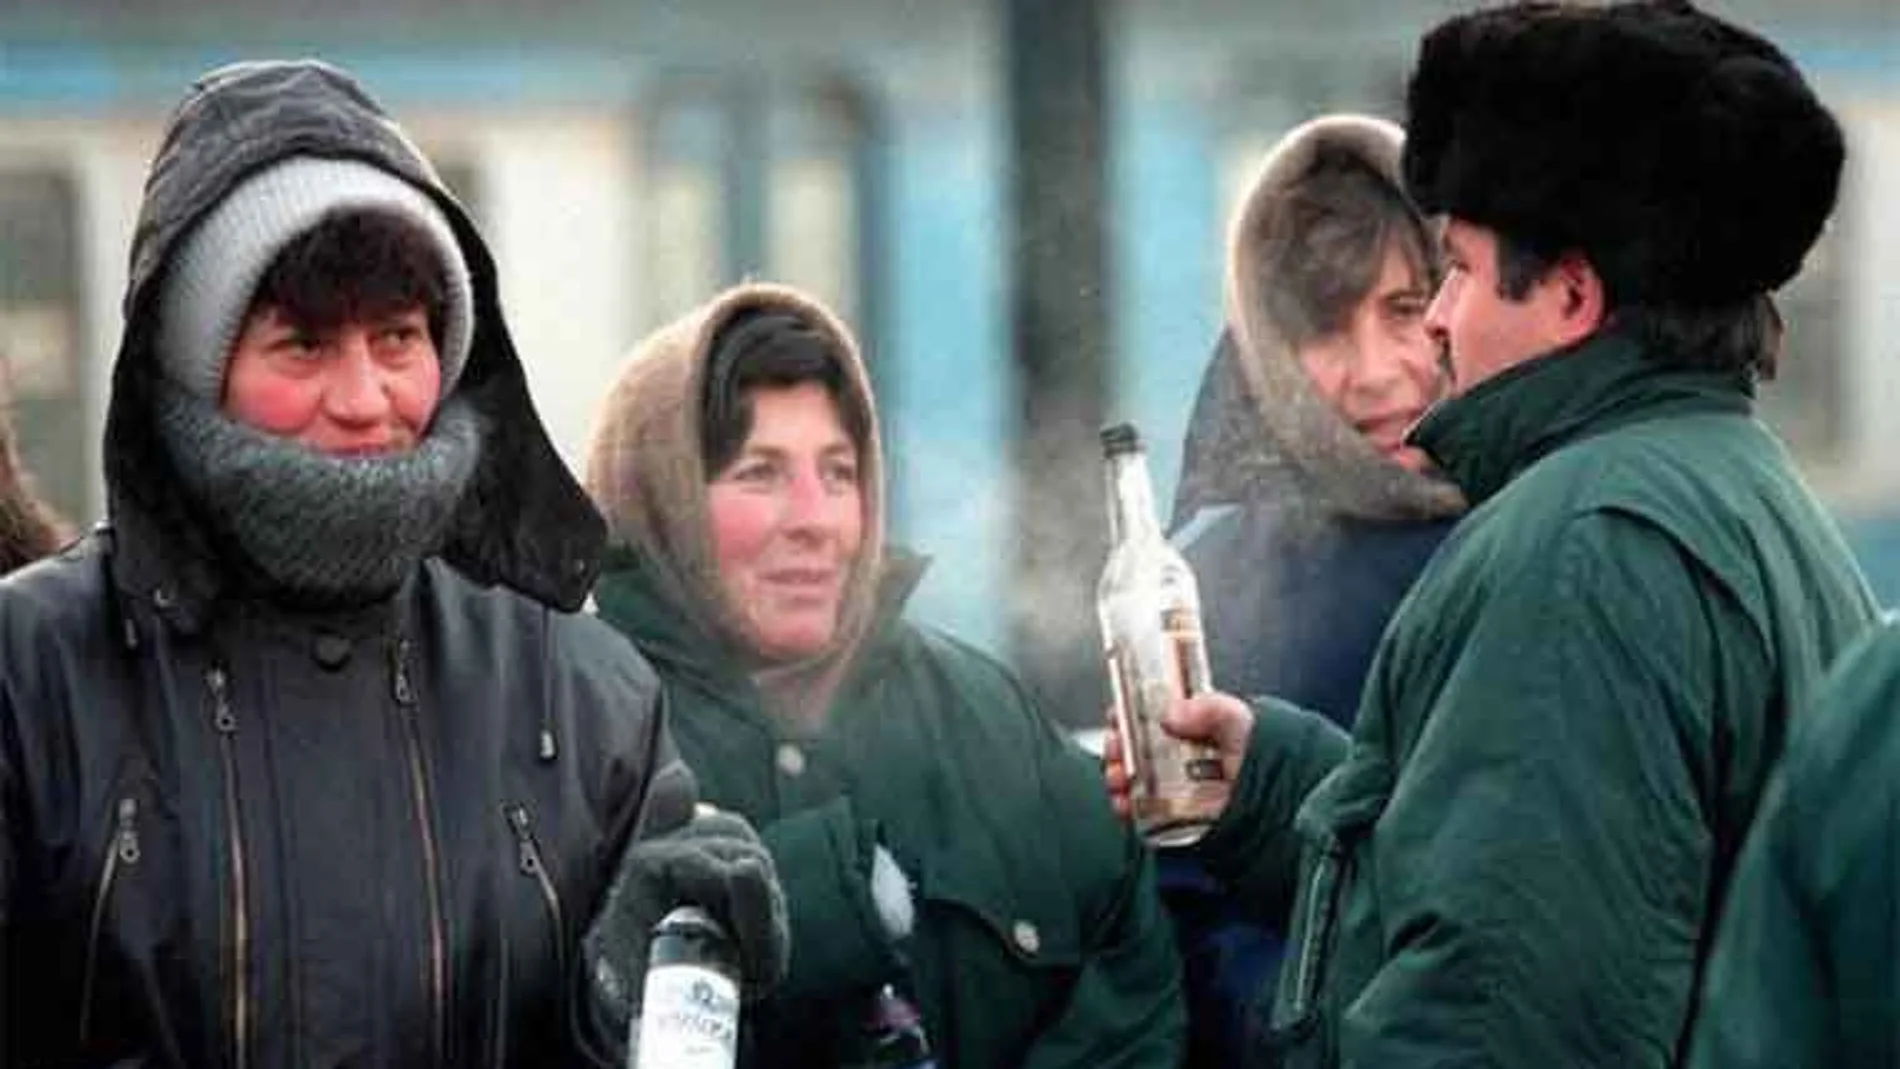 Los rusos de menores ingresos no pueden comprar bebidas alcohólicas certificadas y vuelven a consumir líquidos que contienen alcohol, como colonias y lociones.